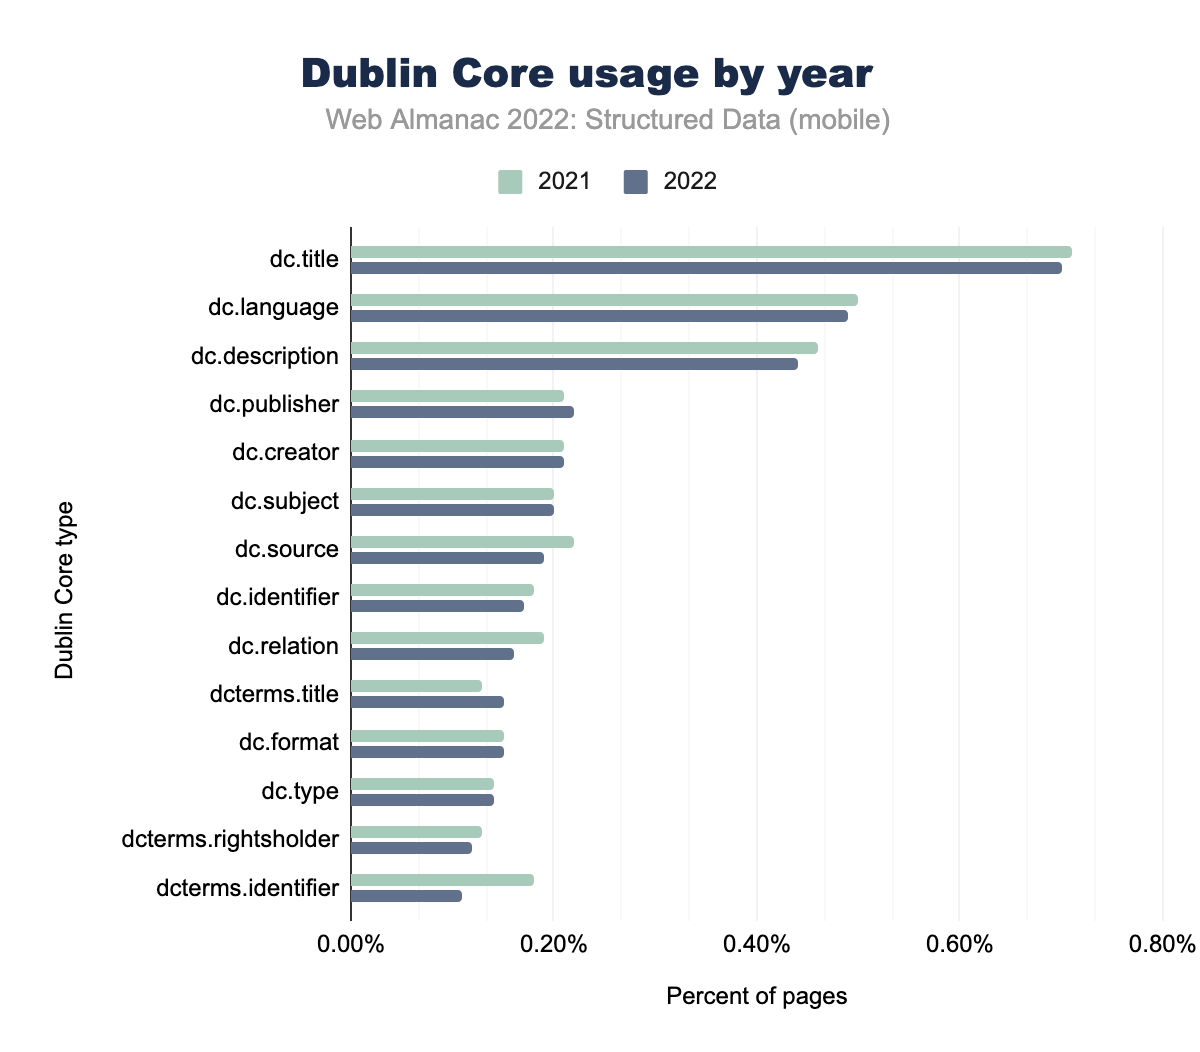 Utilizzo per anno dei Dublin Core (dispositivi mobili)